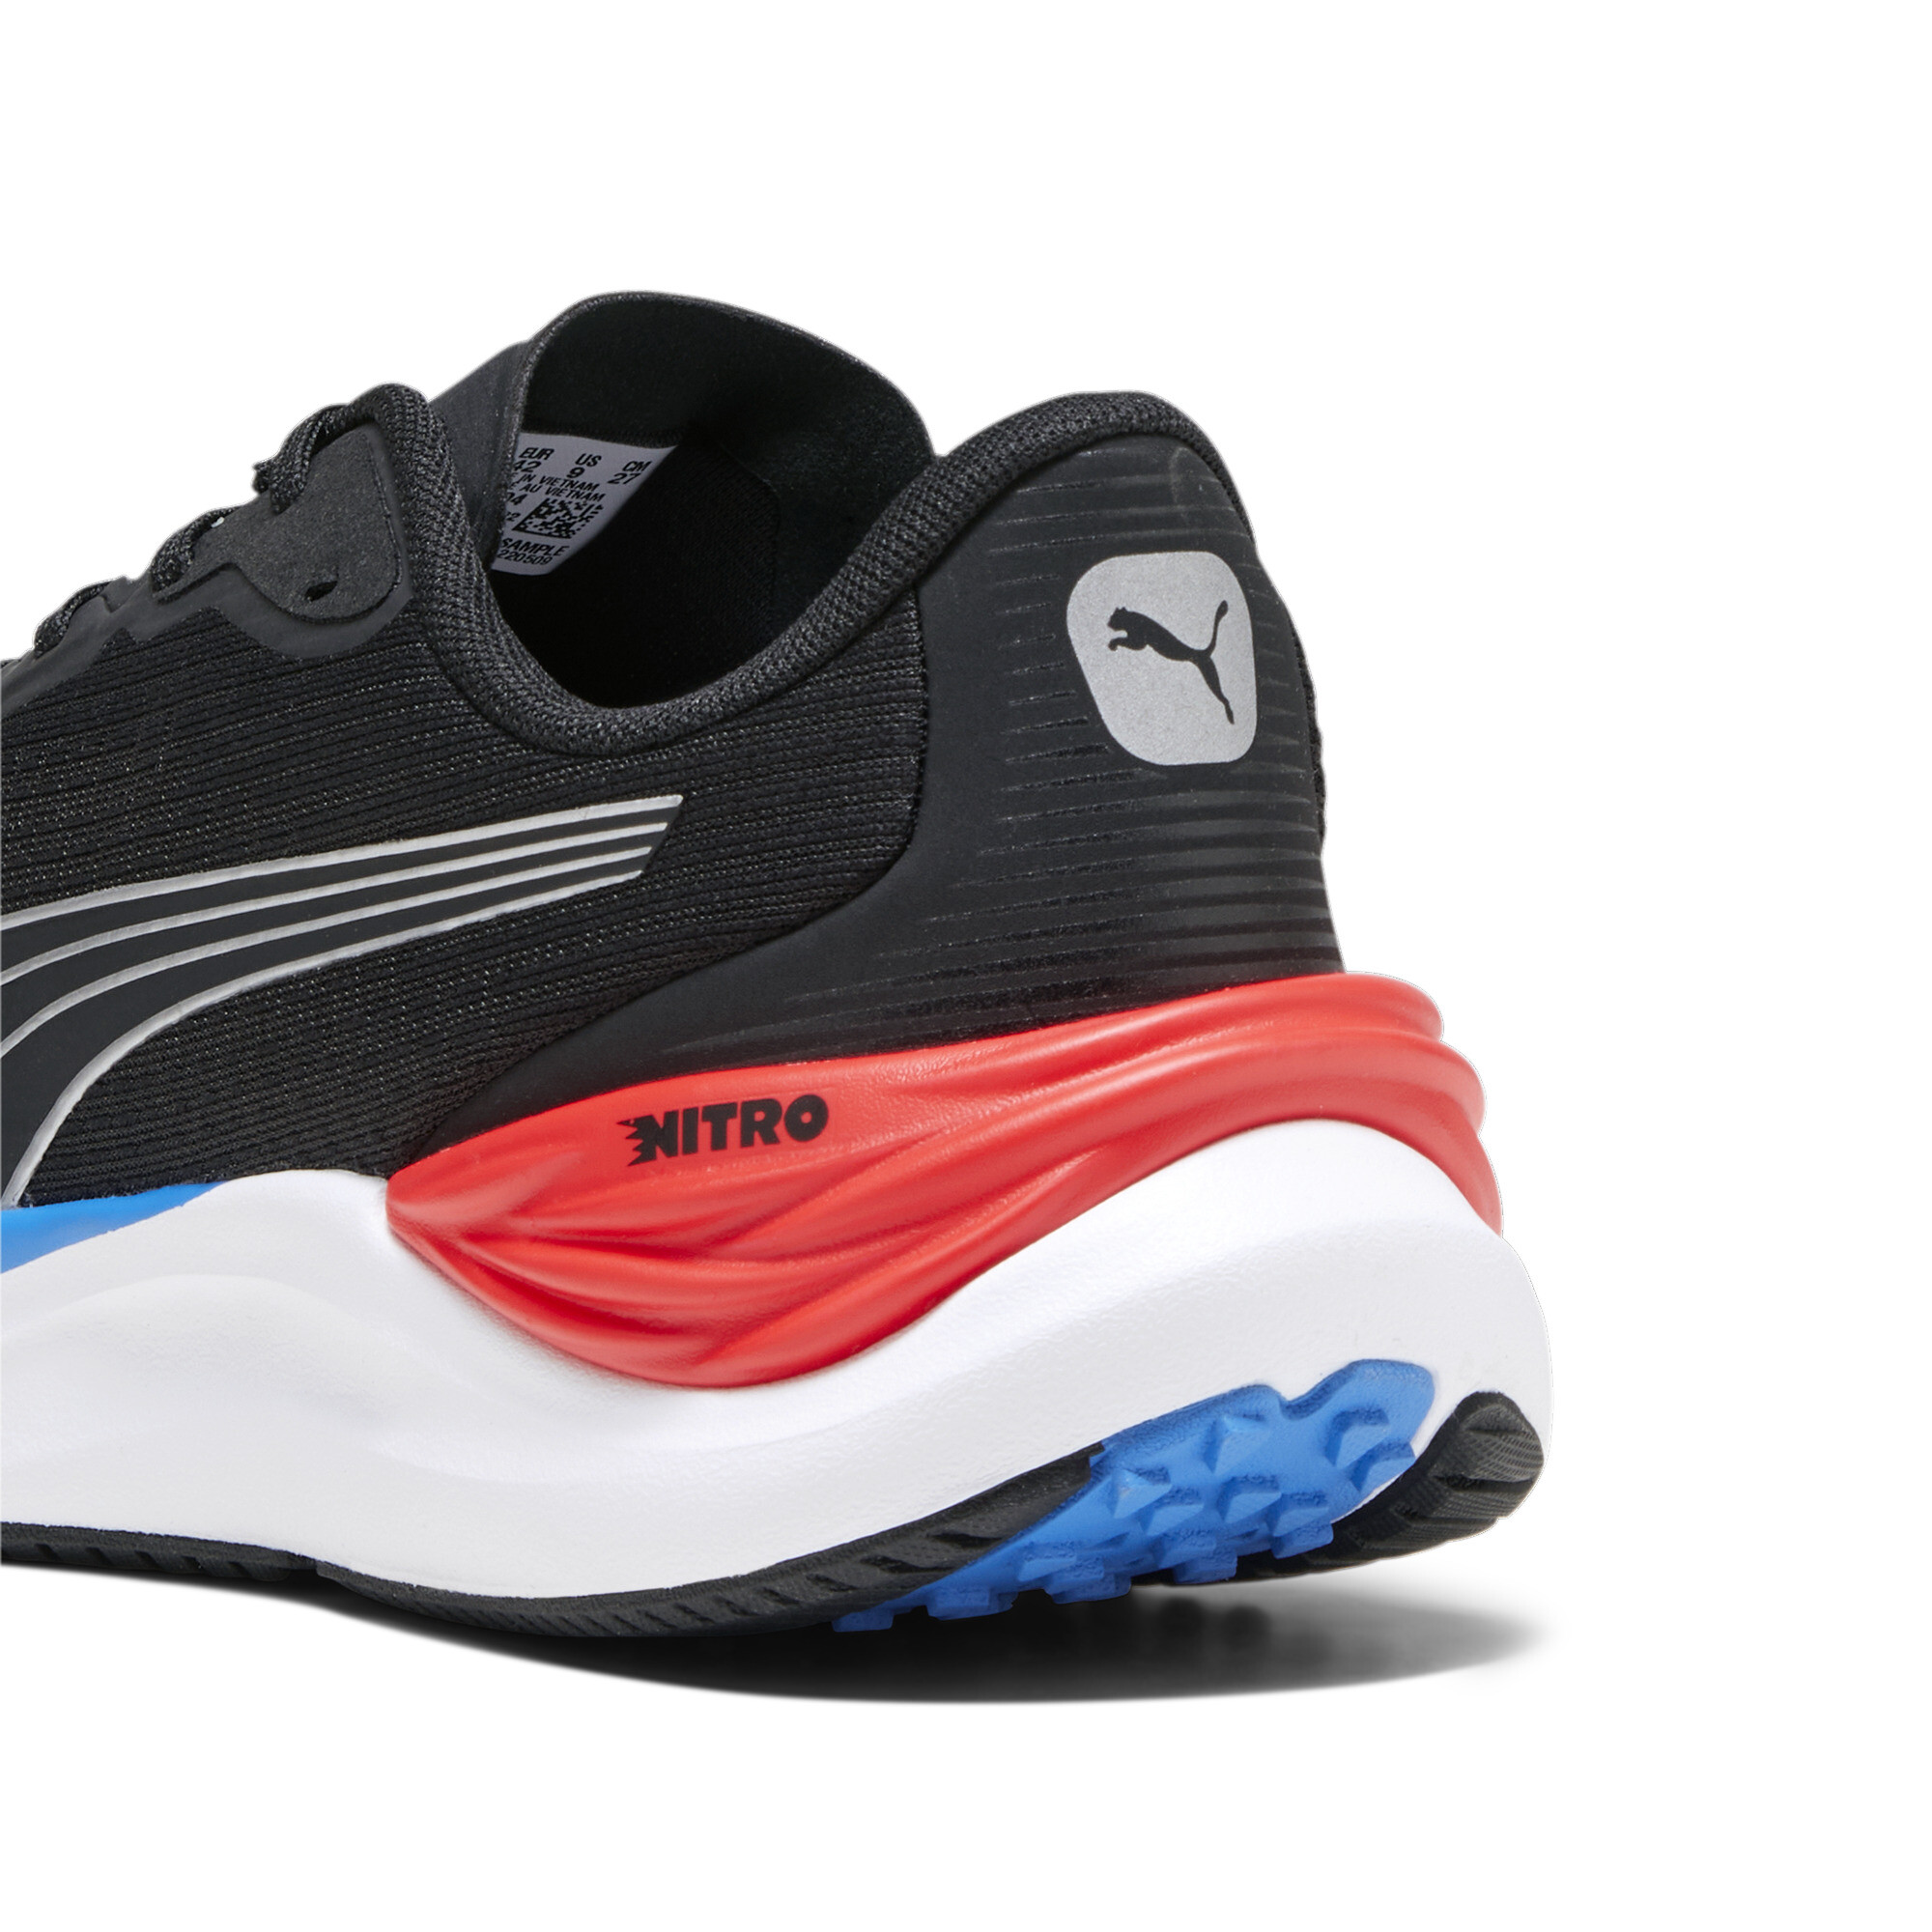 Men's PUMA Electrify NITROâ¢ 3 Running Shoes In Black, Size EU 45